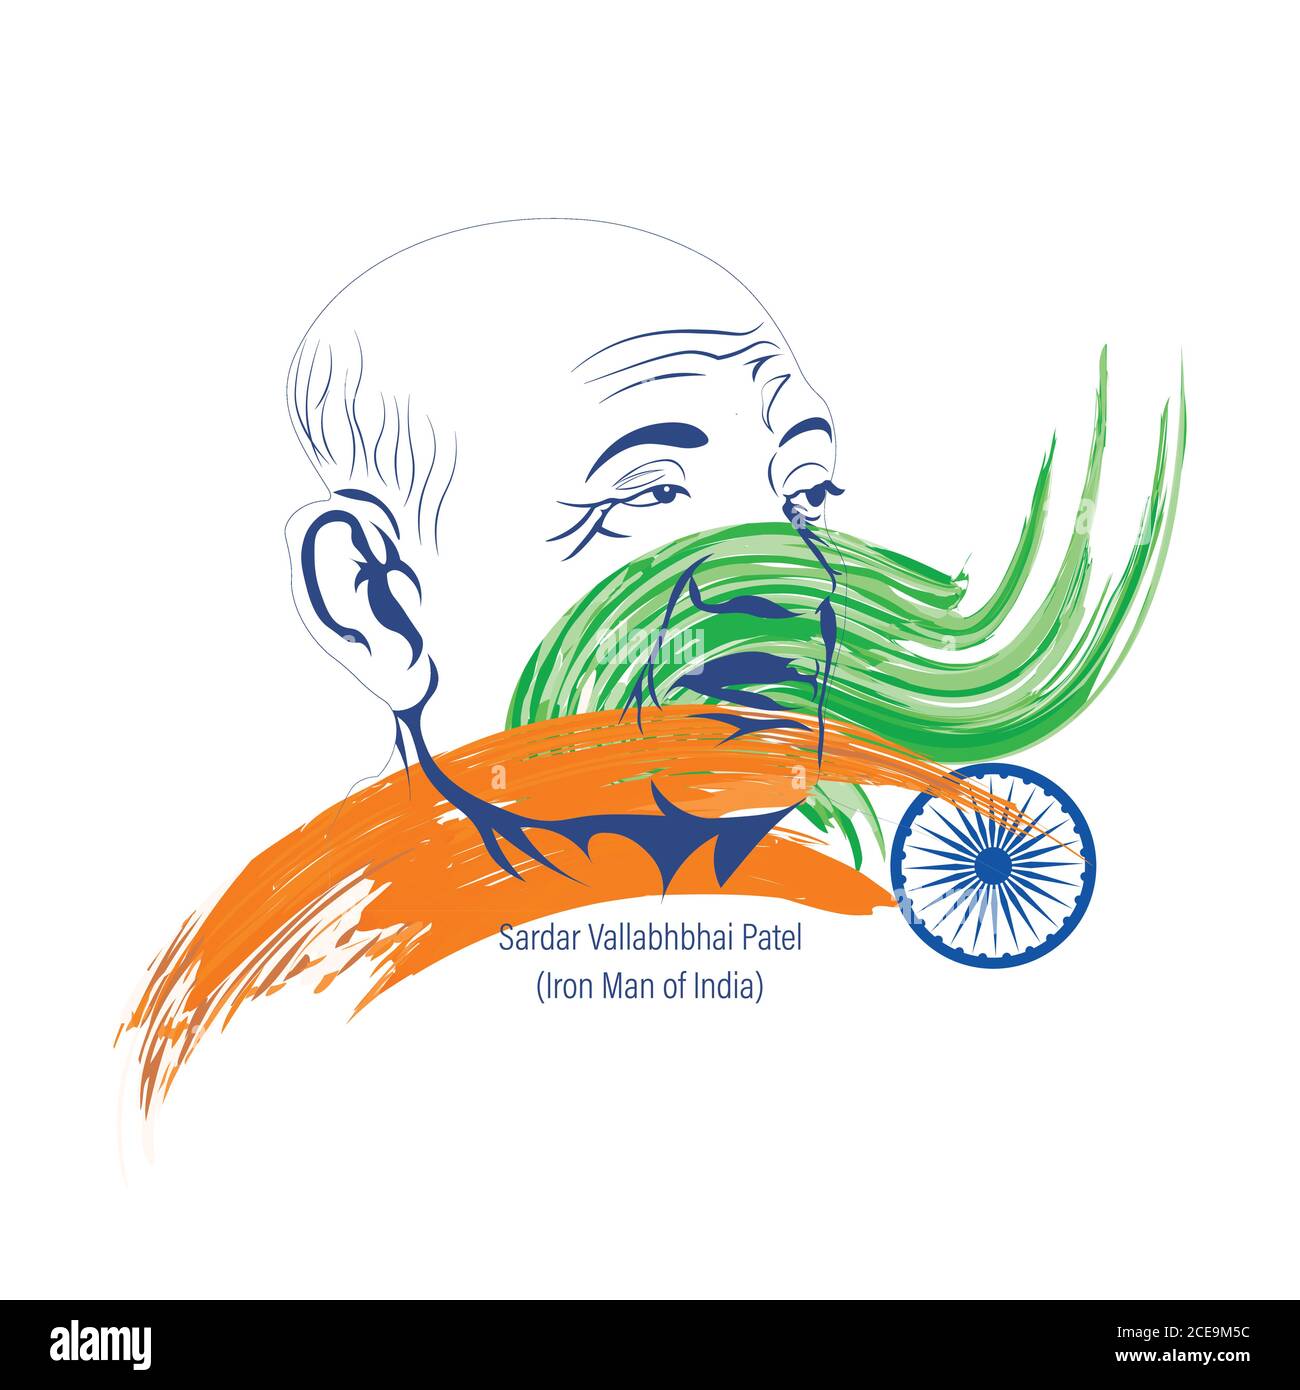 Vektor-Illustration von Sardar Vallabhbhai Patel, der Eiserne Mann von Indien während der Unabhängigkeit 1947. Skizze mit dreifarbiger indischer Flagge. Stock Vektor